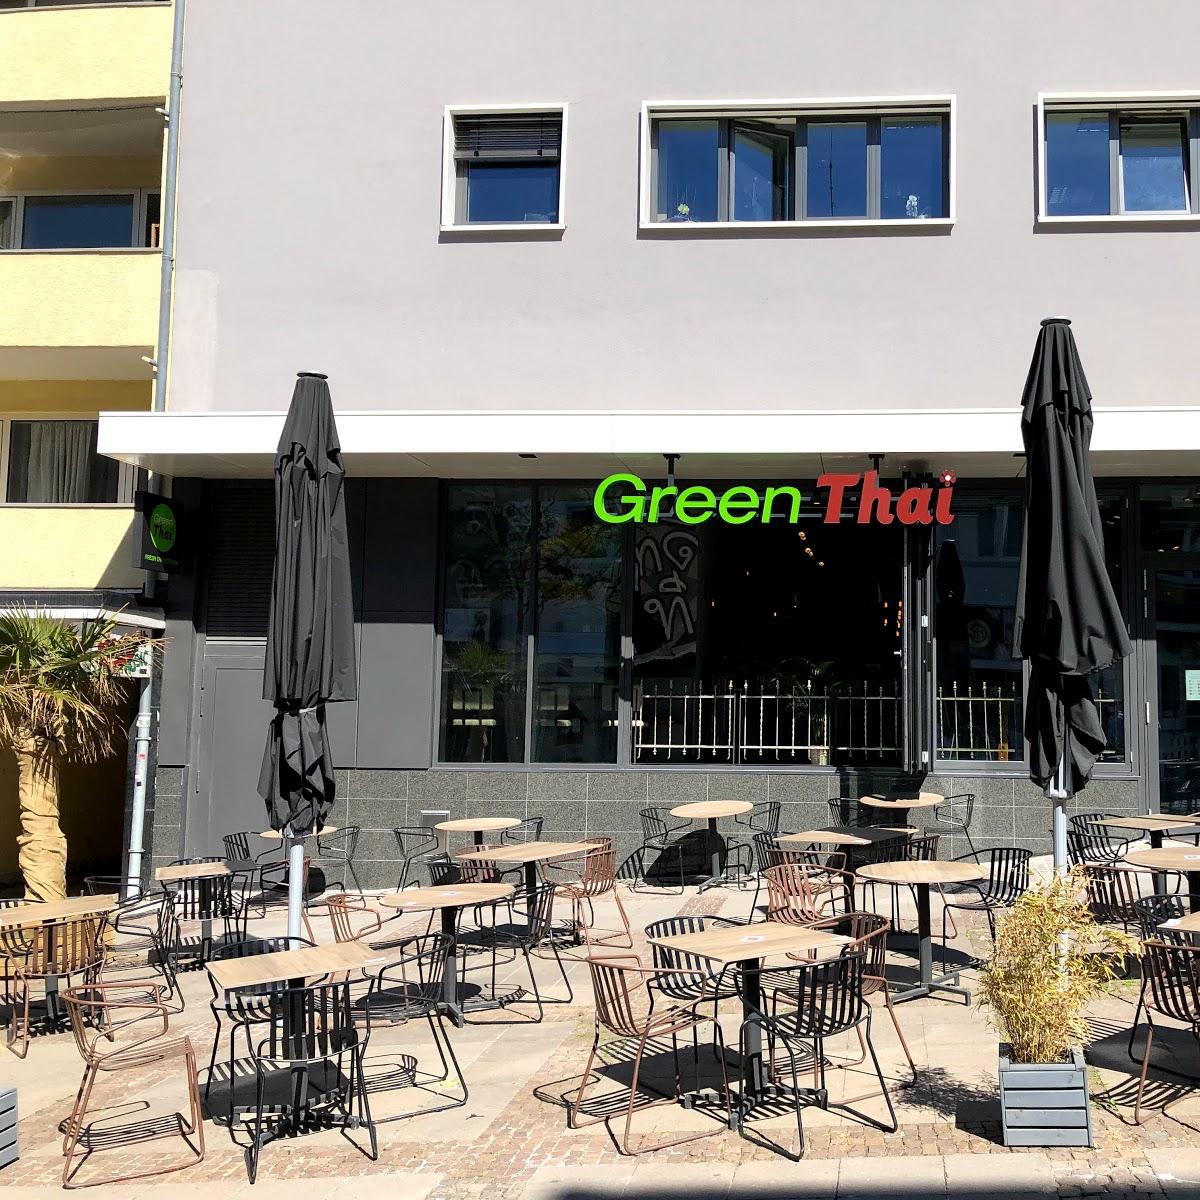 Restaurant "Green Thai" in Darmstadt